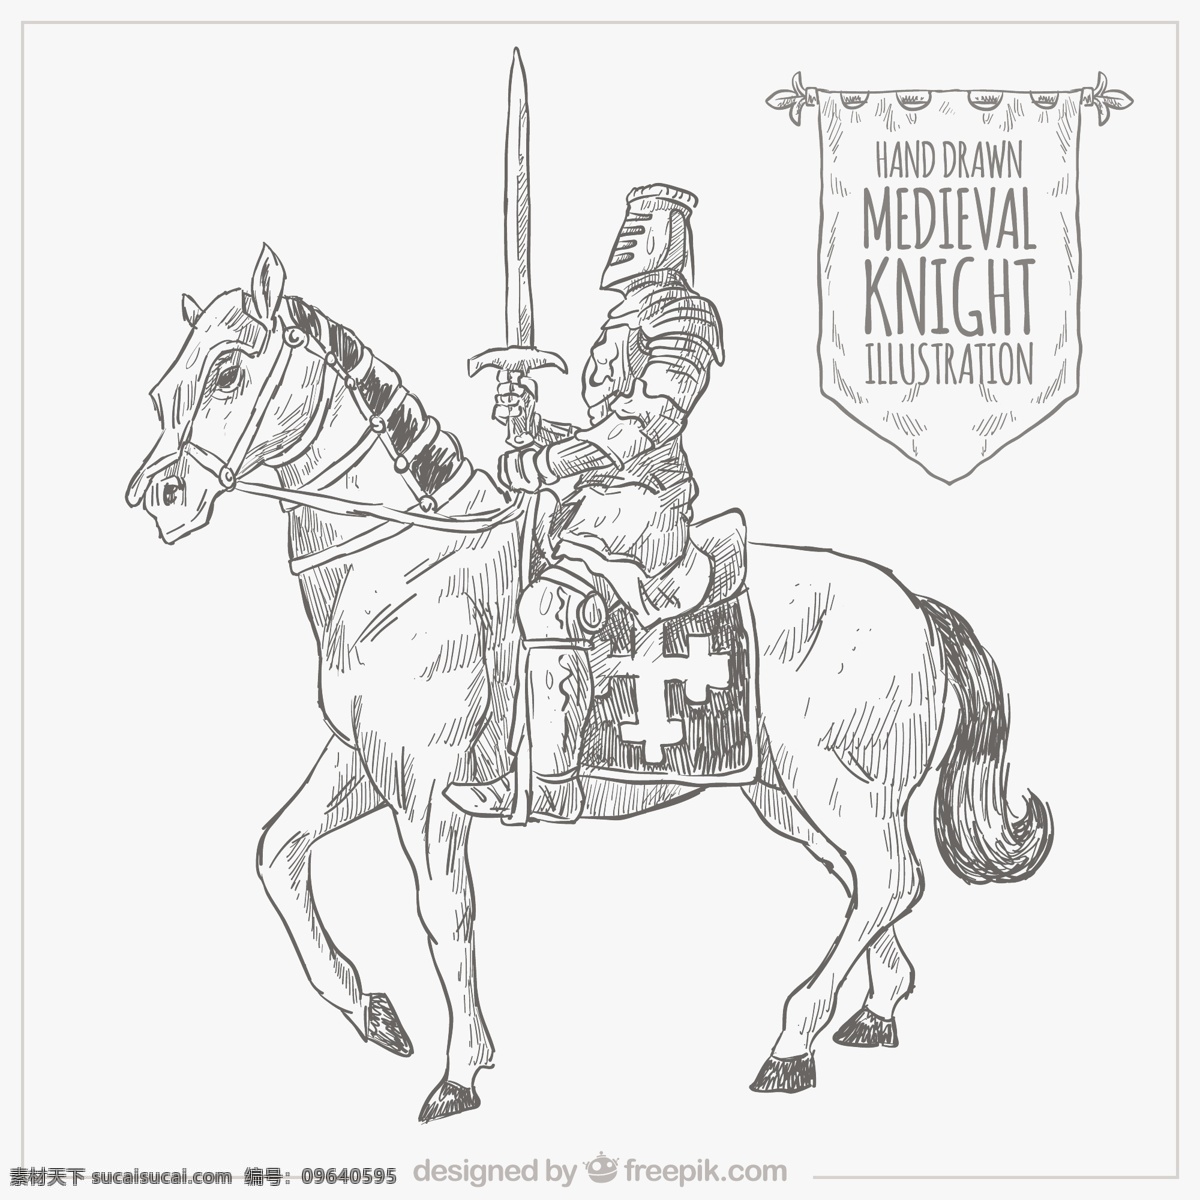 手绘骑士 手 动物 拉 马 绘画 插图 骑士 中世纪 框架 抽纱 素描 手绘